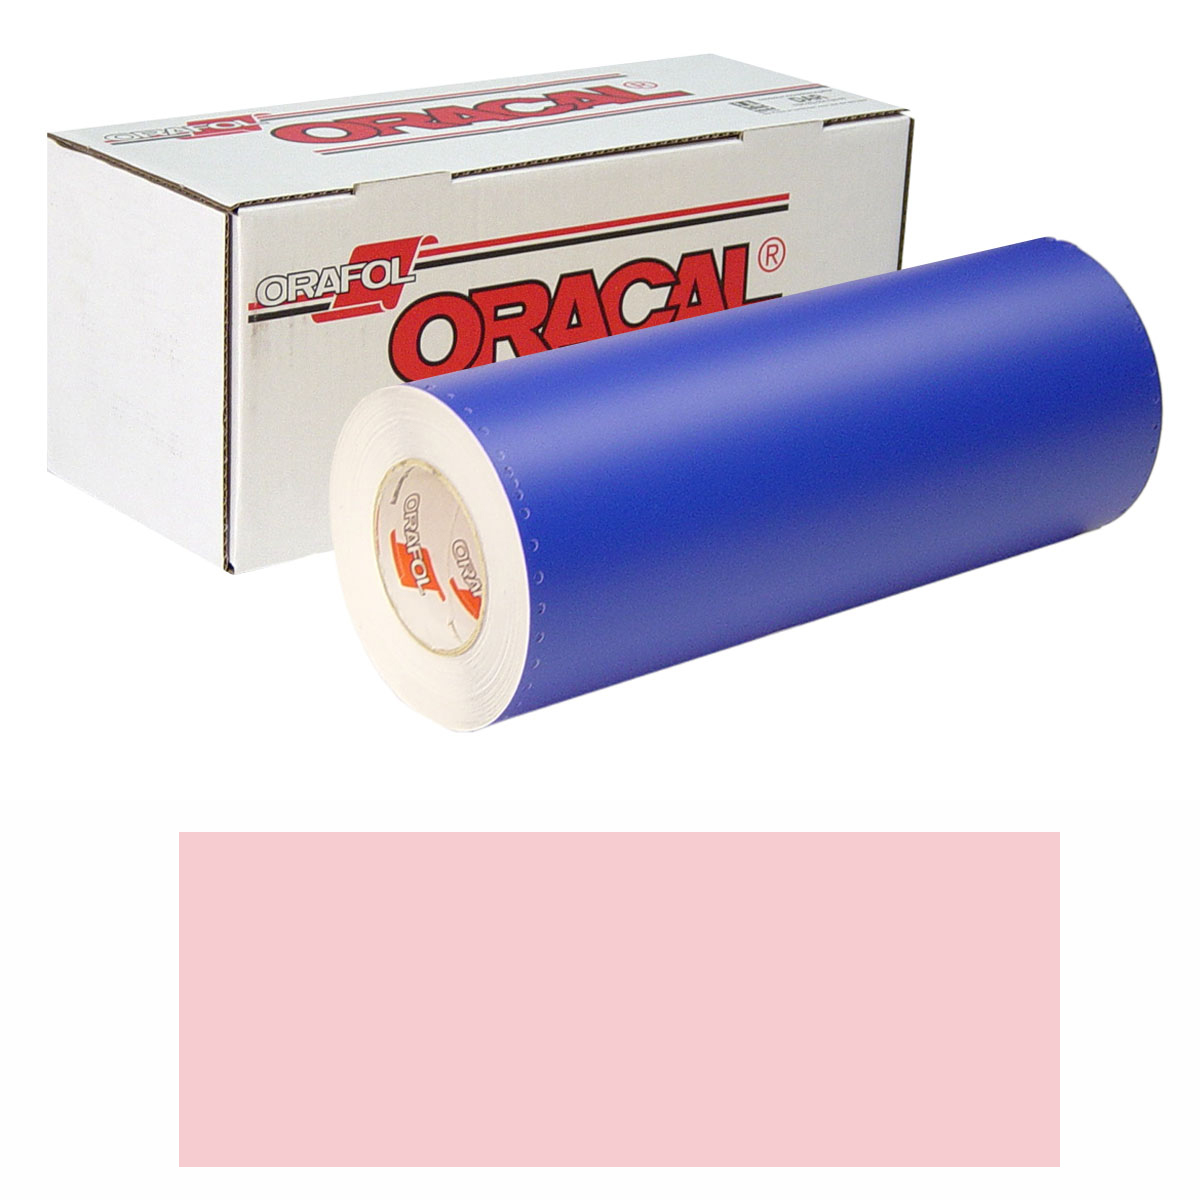 ORACAL 8300 Unp 48in X 10yd 085 Pale-Pink